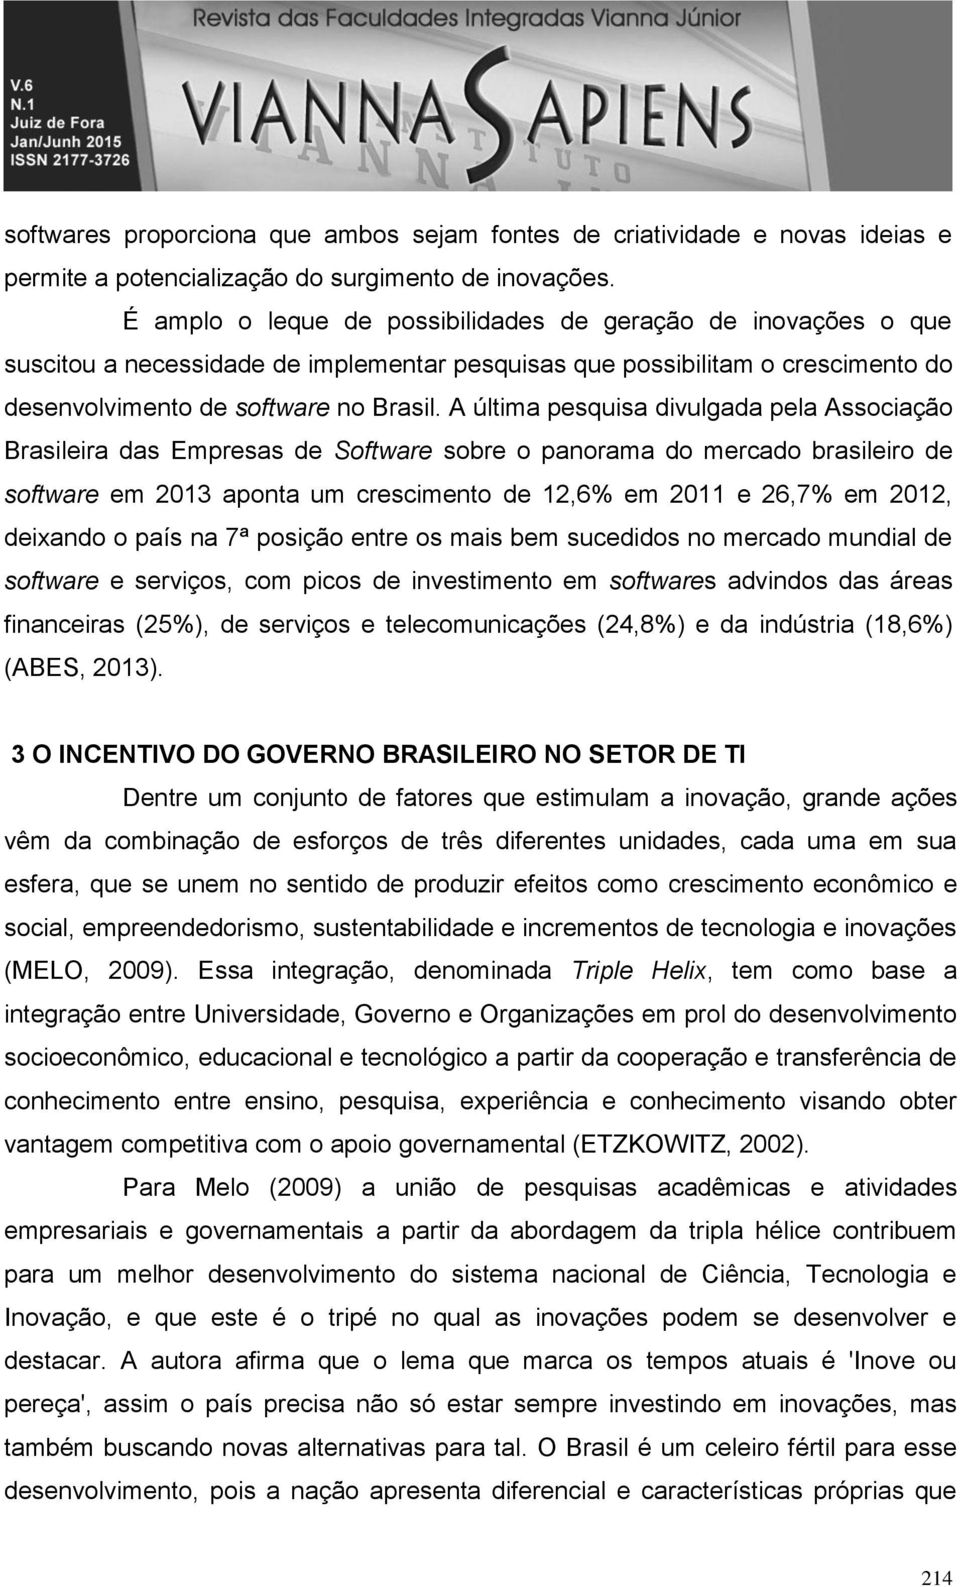 A última pesquisa divulgada pela Associação Brasileira das Empresas de Software sobre o panorama do brasileiro de software em 2013 aponta um crescimento de 12,6% em 2011 e 26,7% em 2012, deixando o